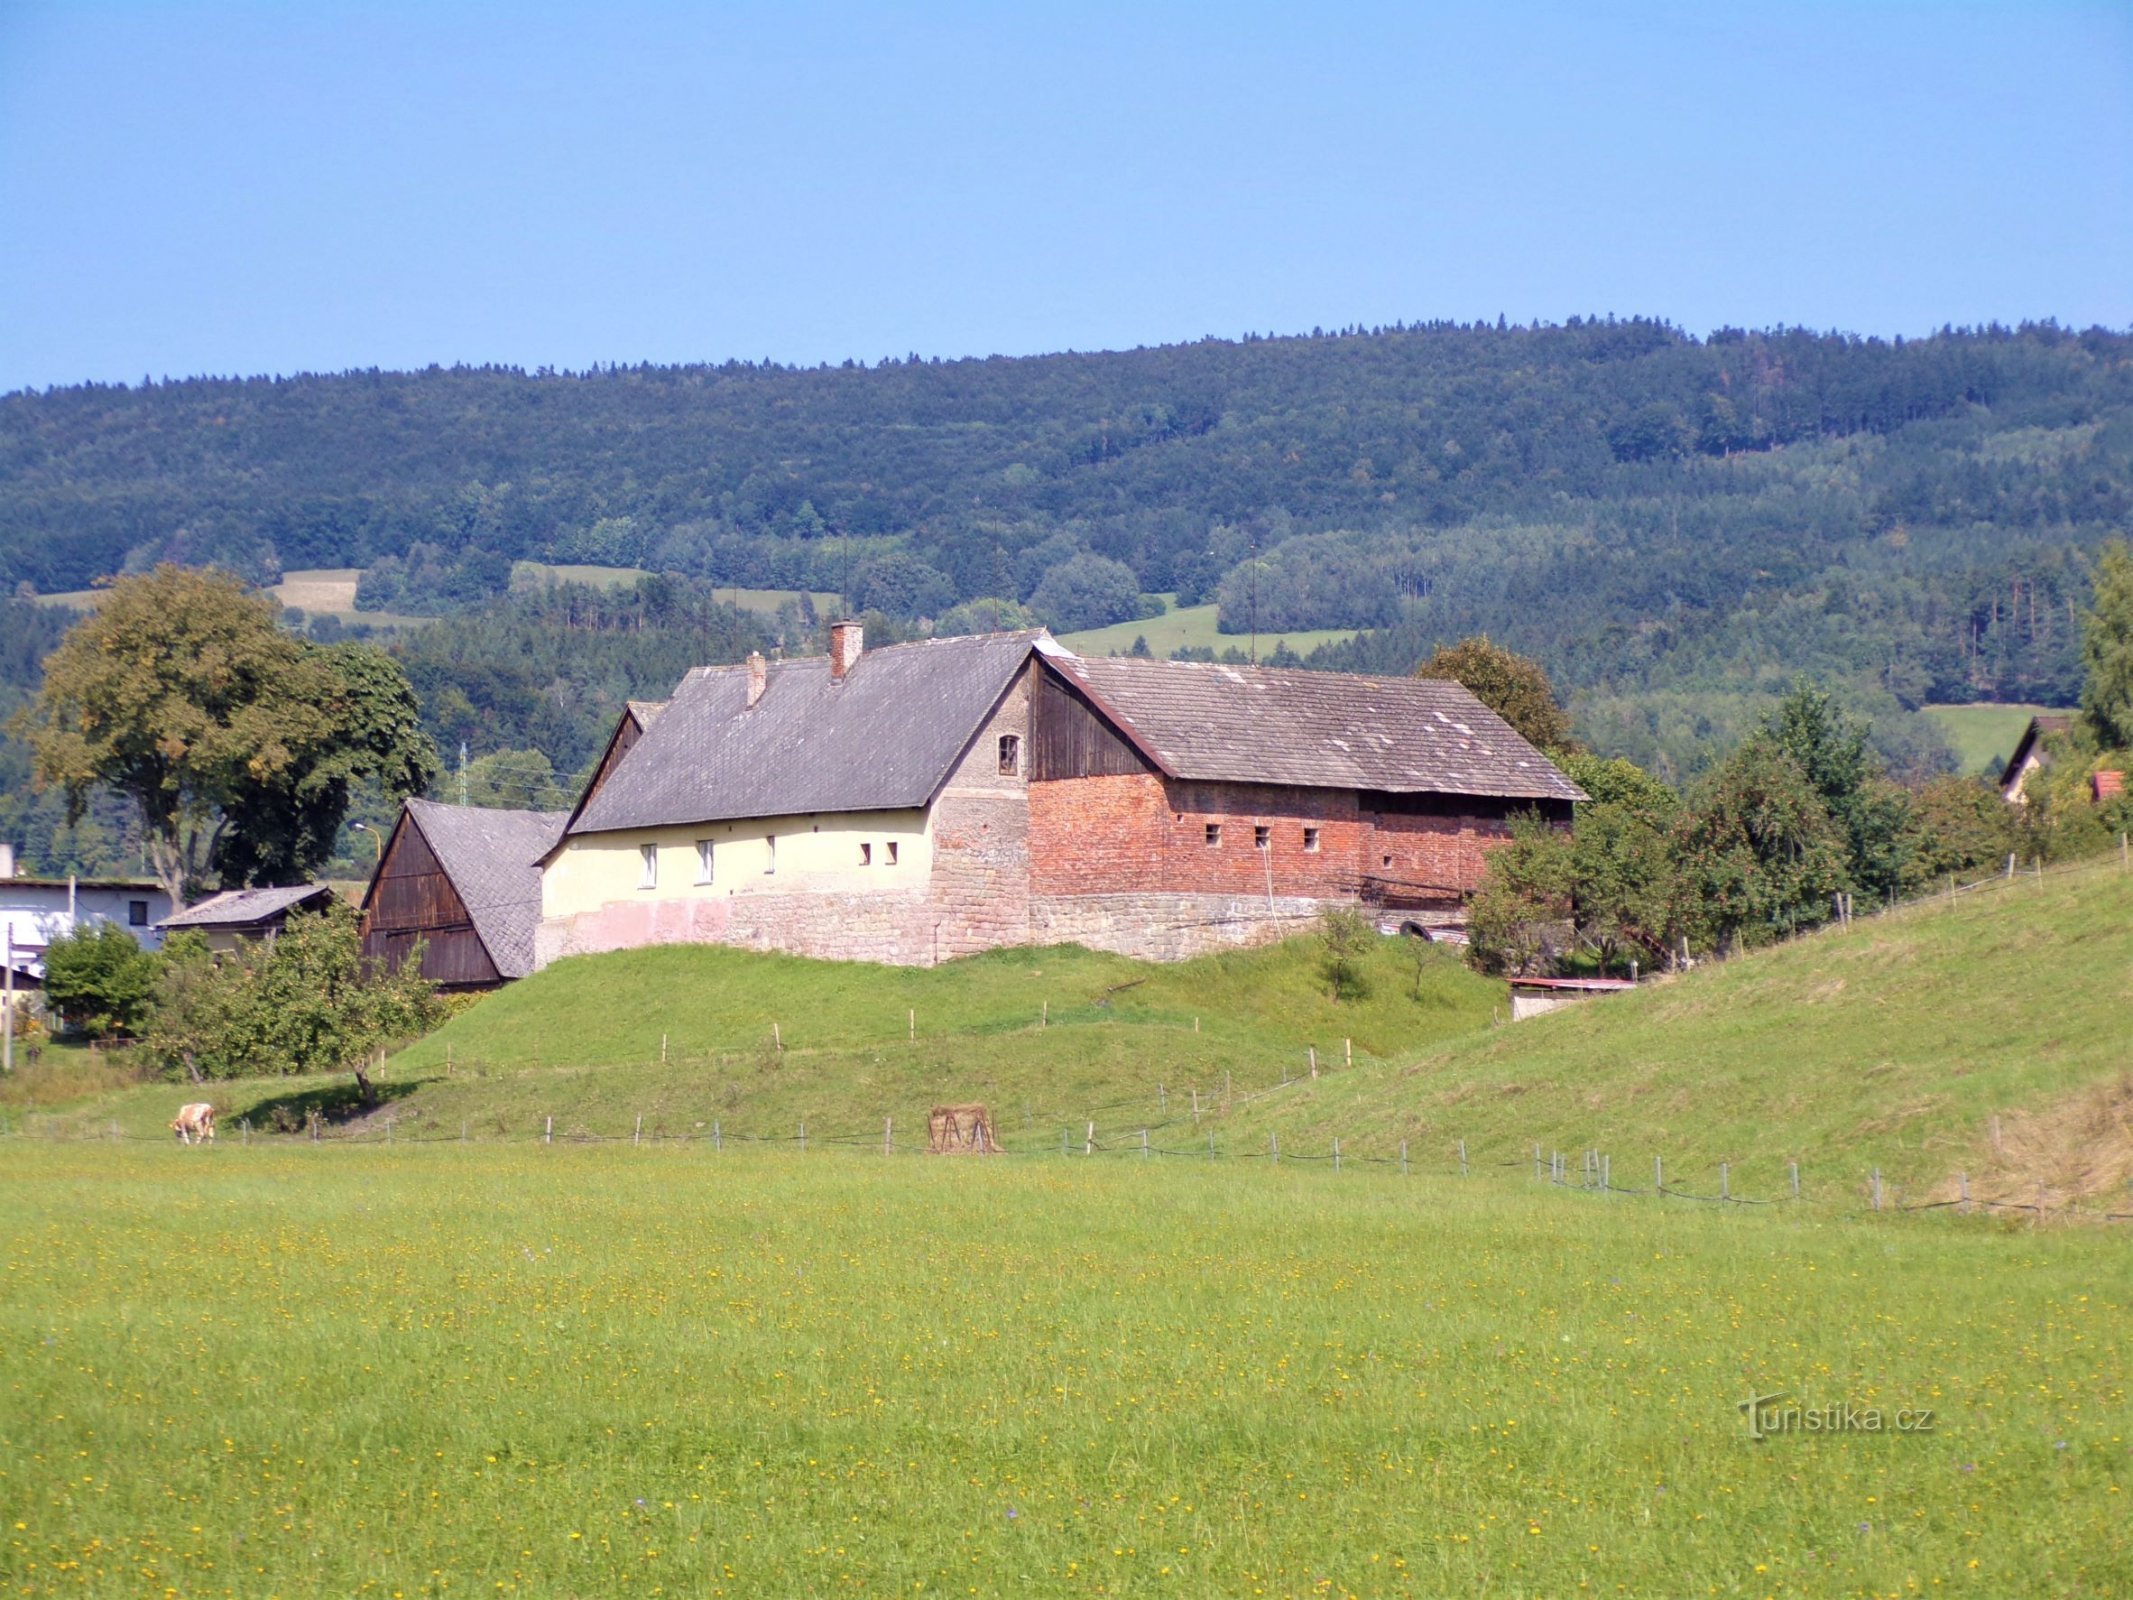 Tila nro 242 entisen linnoituksen paikalla (Velké Svatoňovice, 6.9.2021)